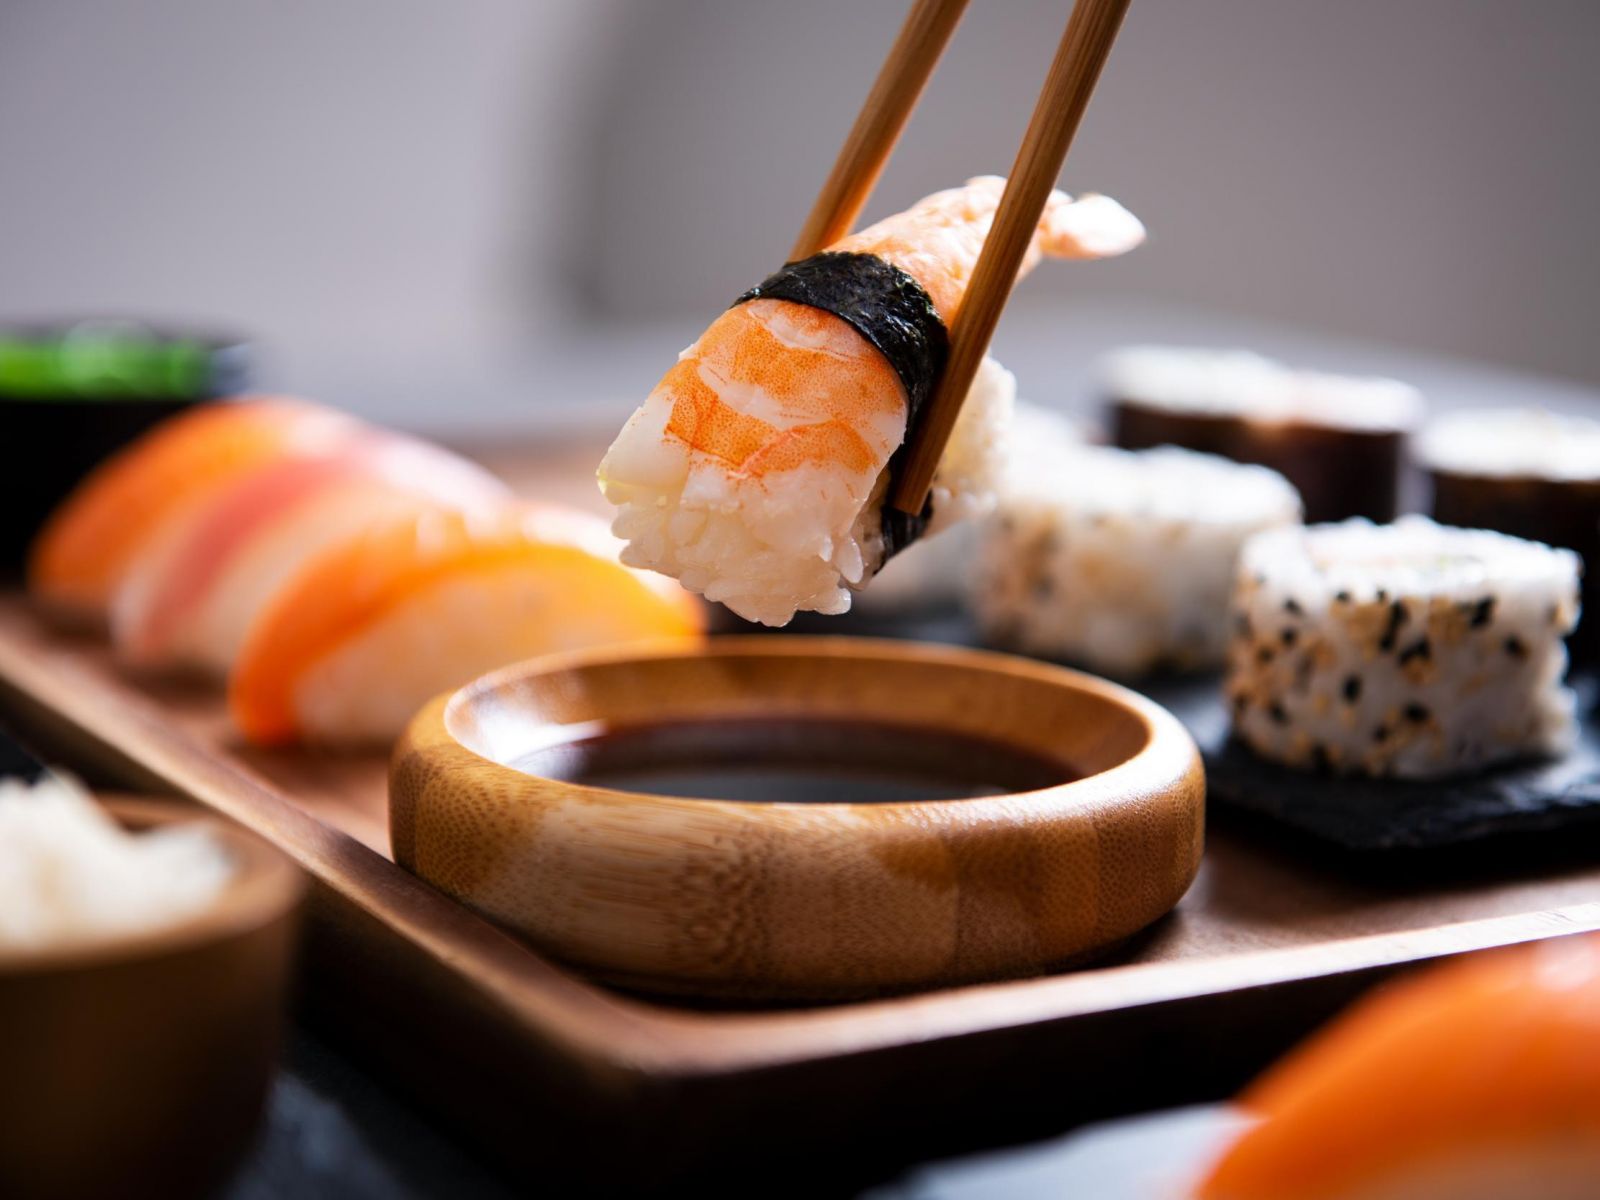 Giờ đây, sushi là một trong những món dành cho người sành ăn và được đưa vào thực đơn của các nhà hàng tốt nhất trên thế giới. Tuy nhiên, thực phẩm này từng là món ăn quen thuộc của những ngư dân nghèo Nhật Bản. Giá sushi tăng chóng mặt vào giữa thế kỷ 20. Một số ý kiến cho rằng điều này xảy ra do Nhật Bản mở rộng quan hệ quốc tế và bắt đầu thu hút nhiều khách du lịch.